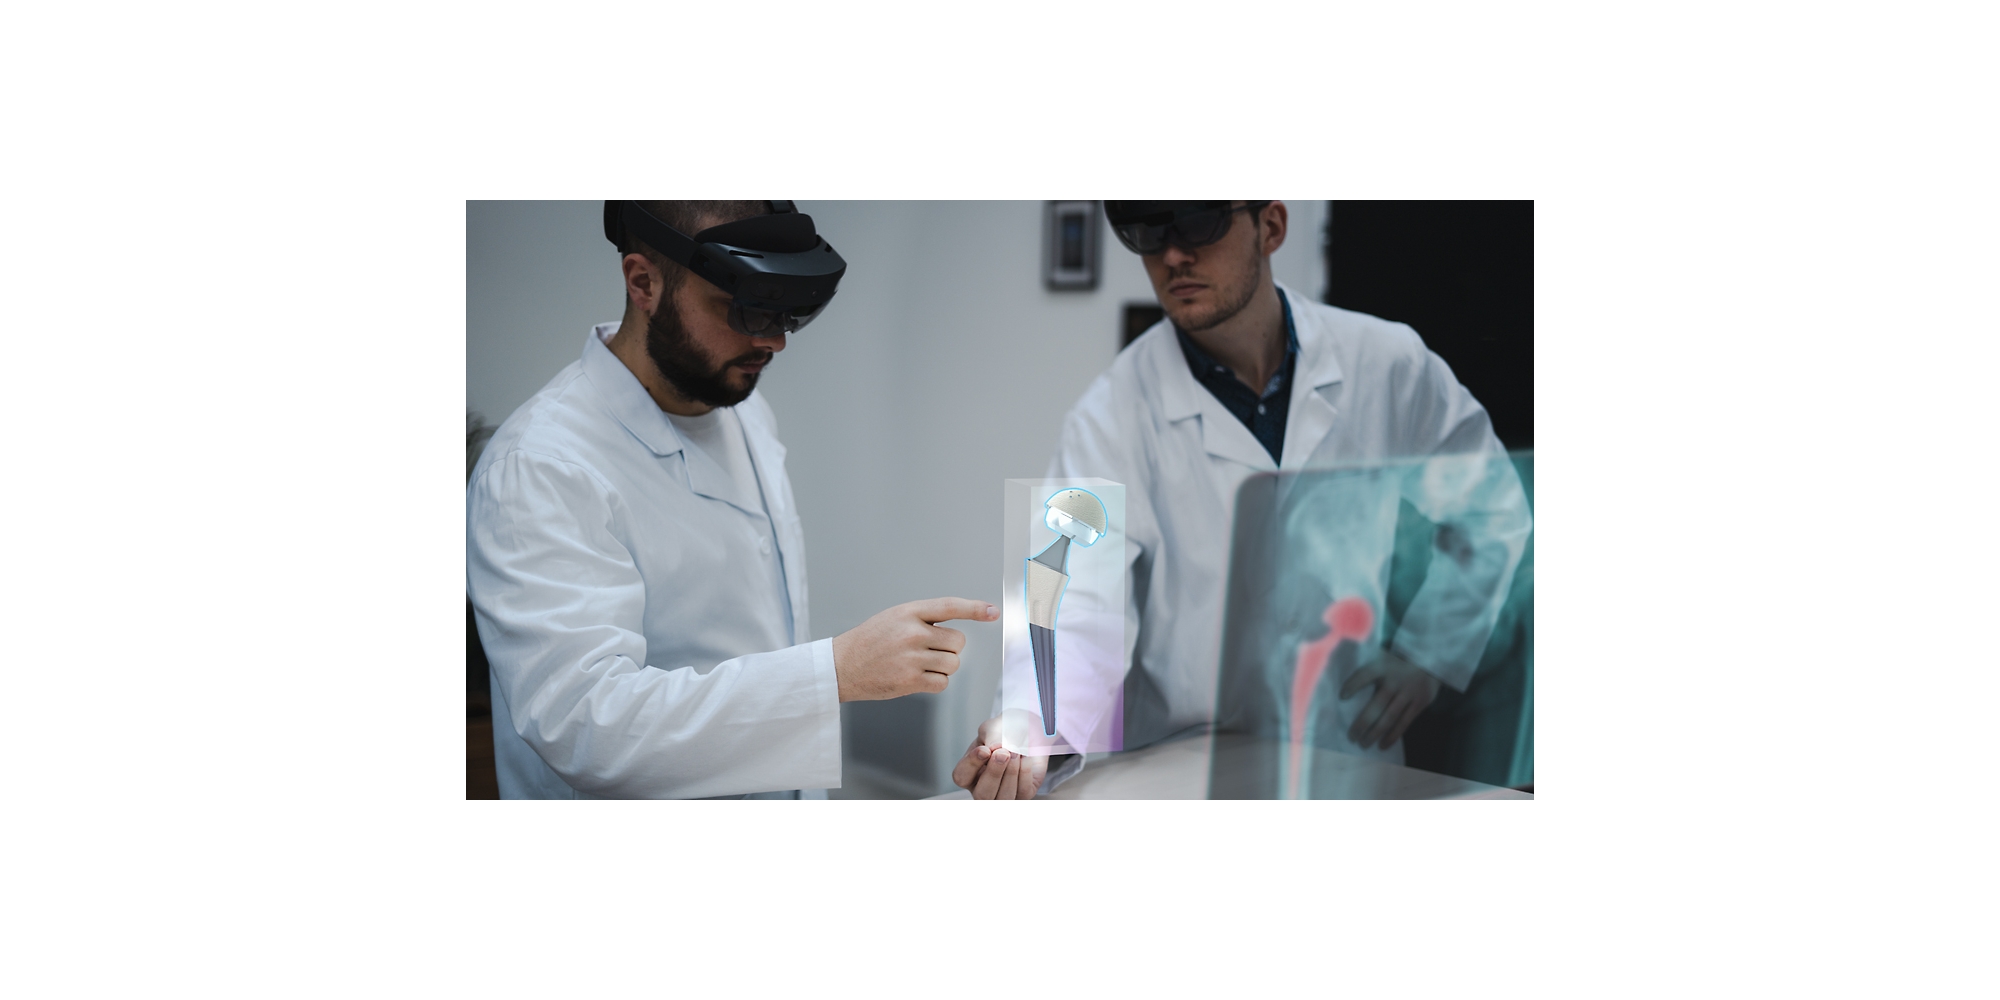 Dva zdravstvena radnika koji koriste uređaje HoloLens 2 da gledaju rendgenski snimak u mešovitoj realnosti.